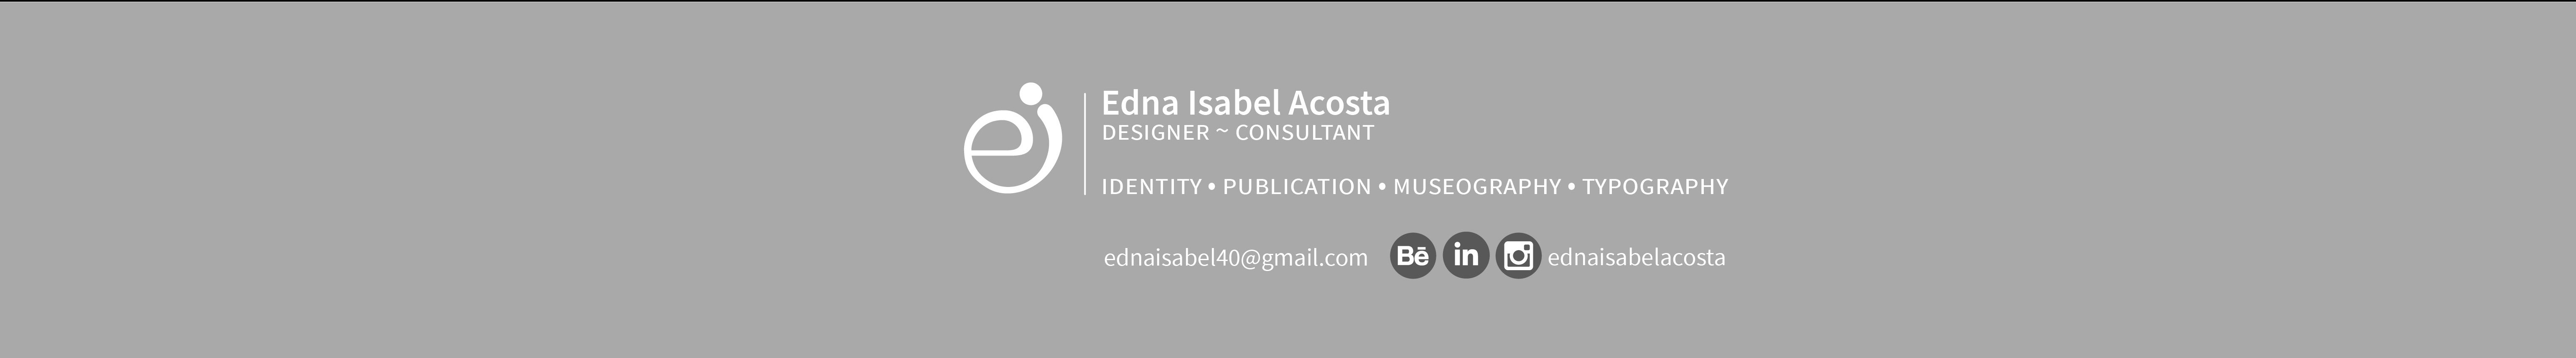 Profil-Banner von Edna Isabel Acosta